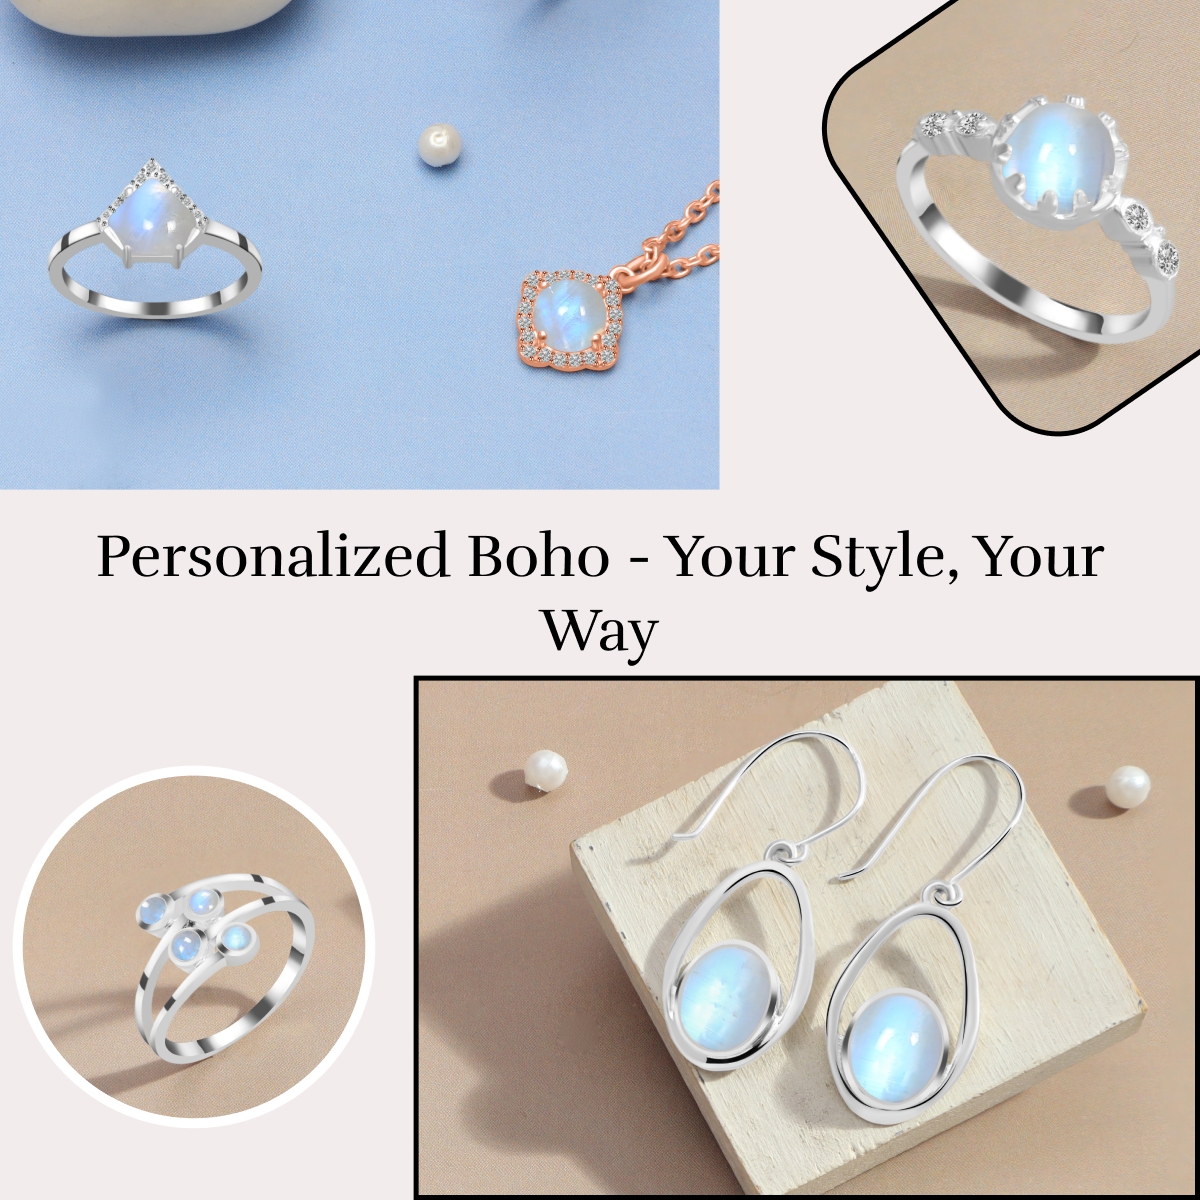 Customized Boho Jewelry